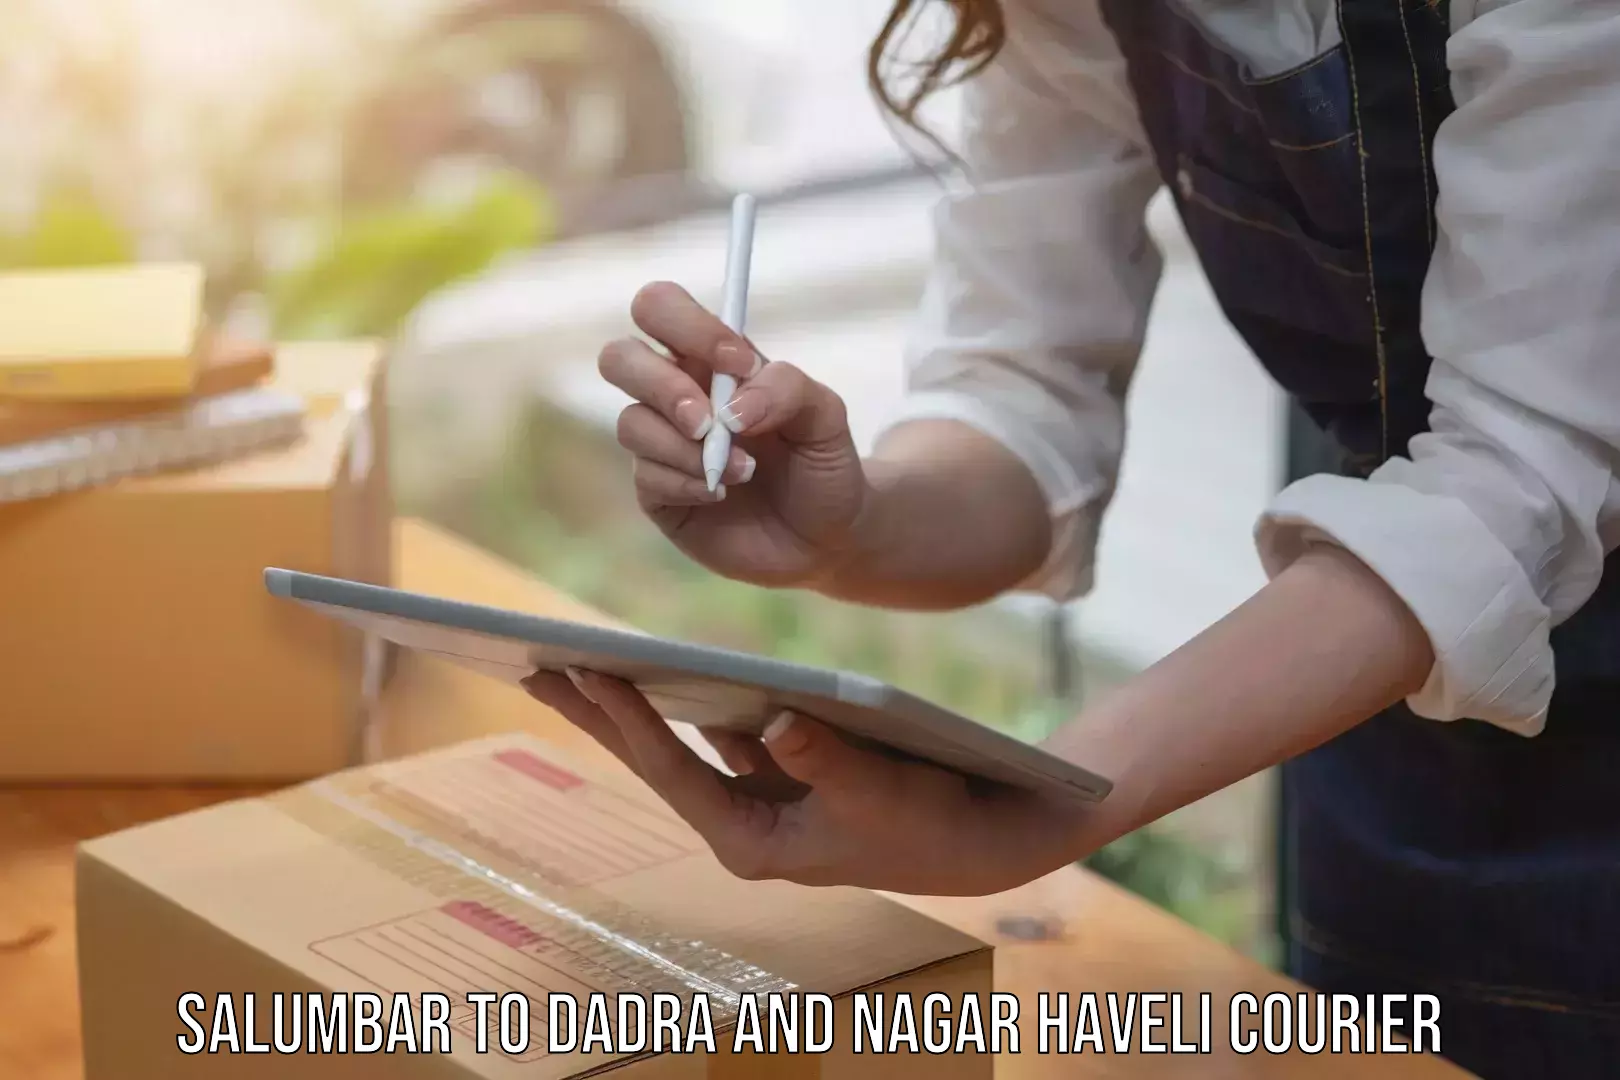 Multi-service courier options Salumbar to Dadra and Nagar Haveli